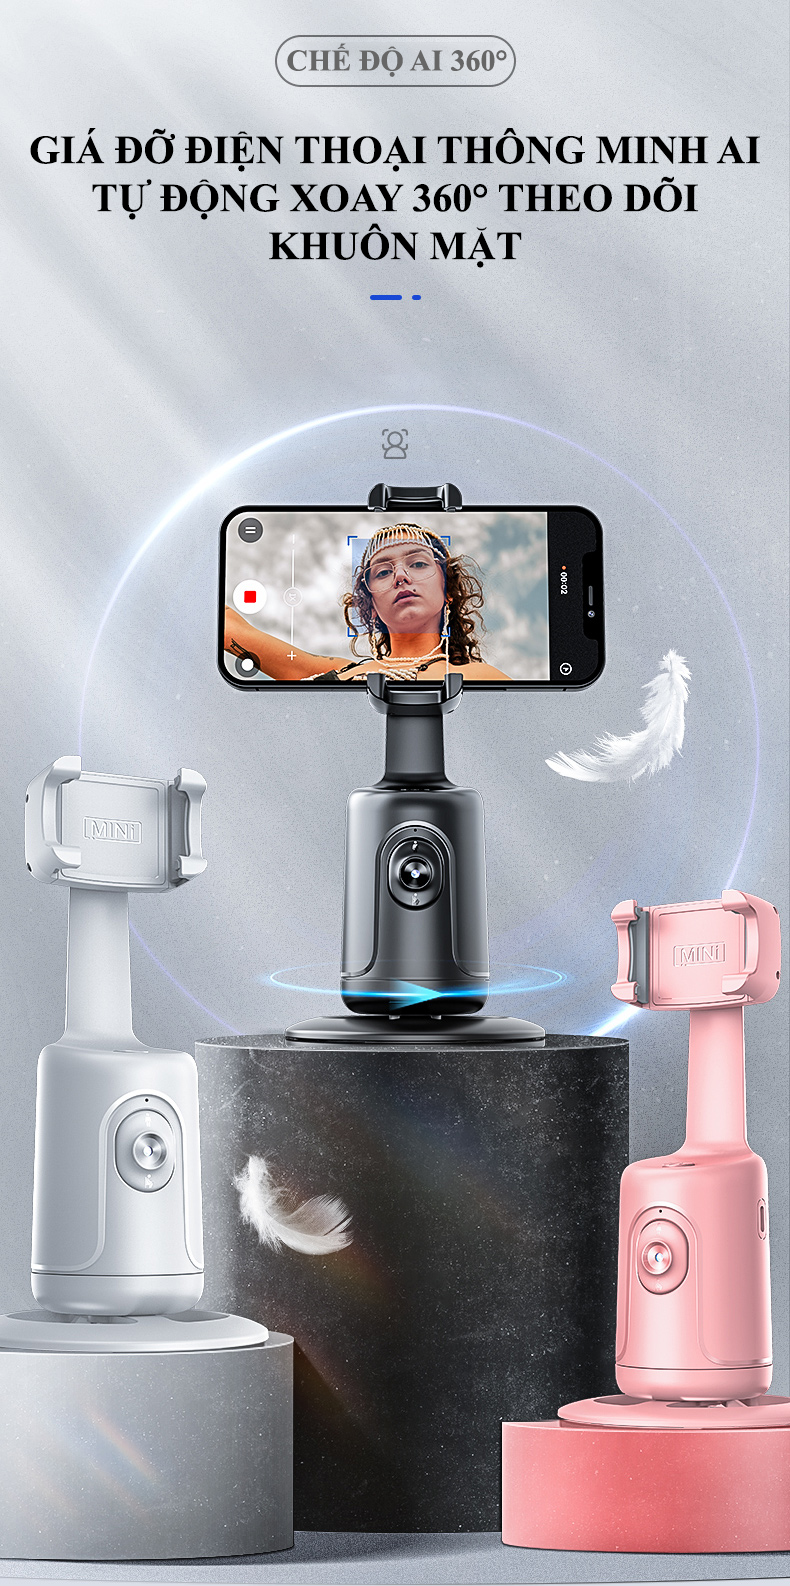 Giá đỡ điện thoại thông minh AI tự động xoay 360 độ theo dõi khuôn mặt hỗ trợ livestream, quay phim